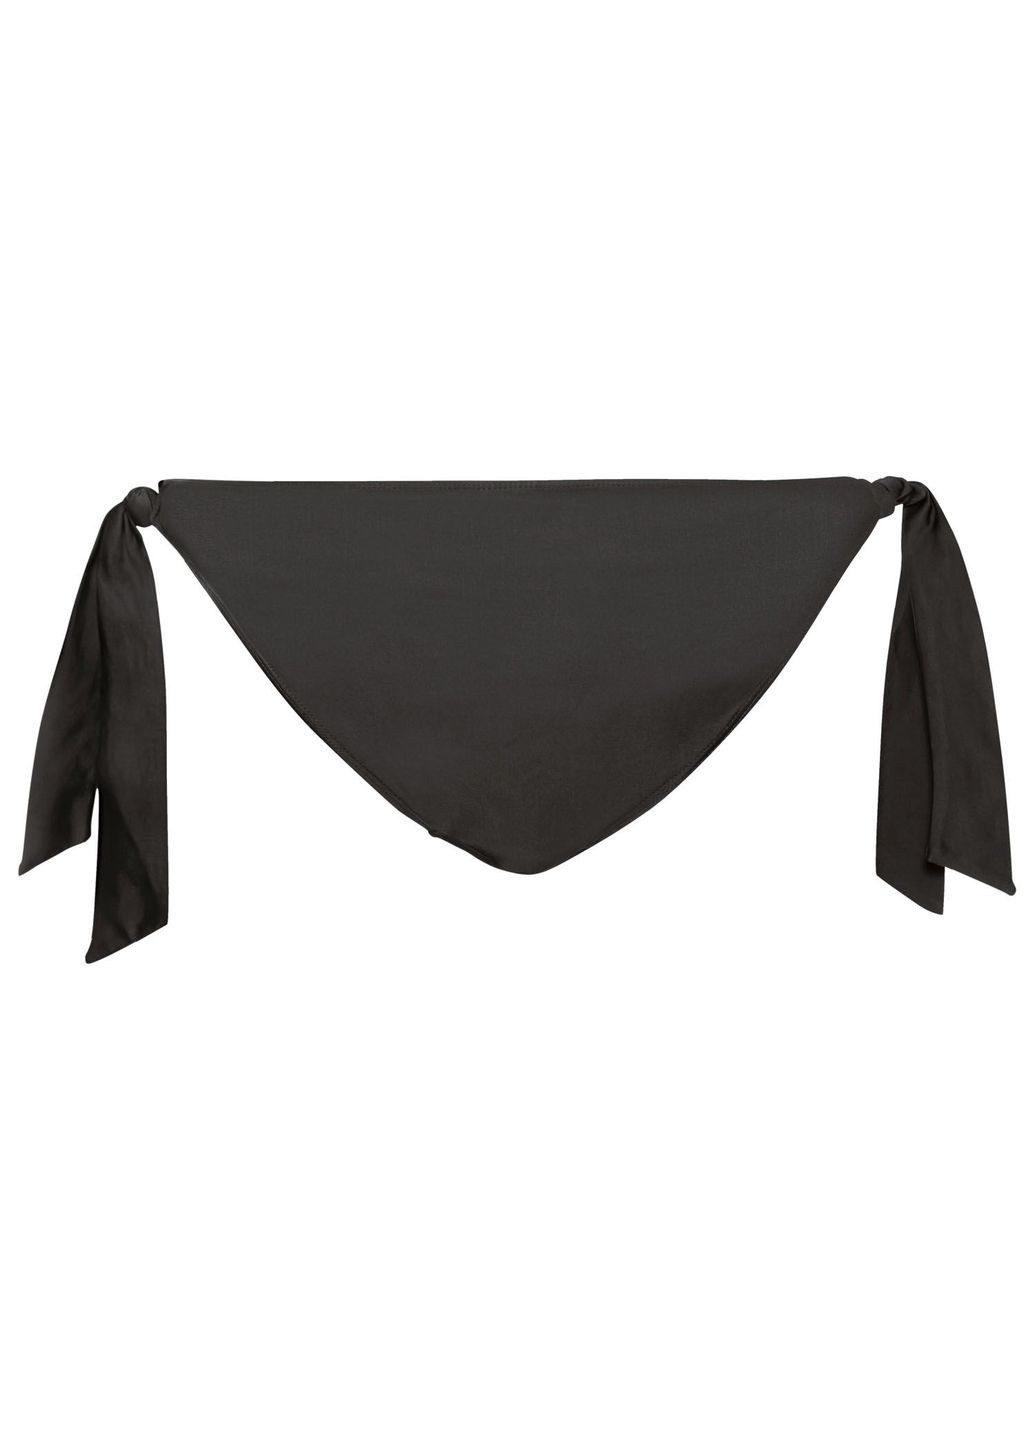 Чорний купальник роздільний на підкладці для жінки lycra® 407621 чорний Esmara